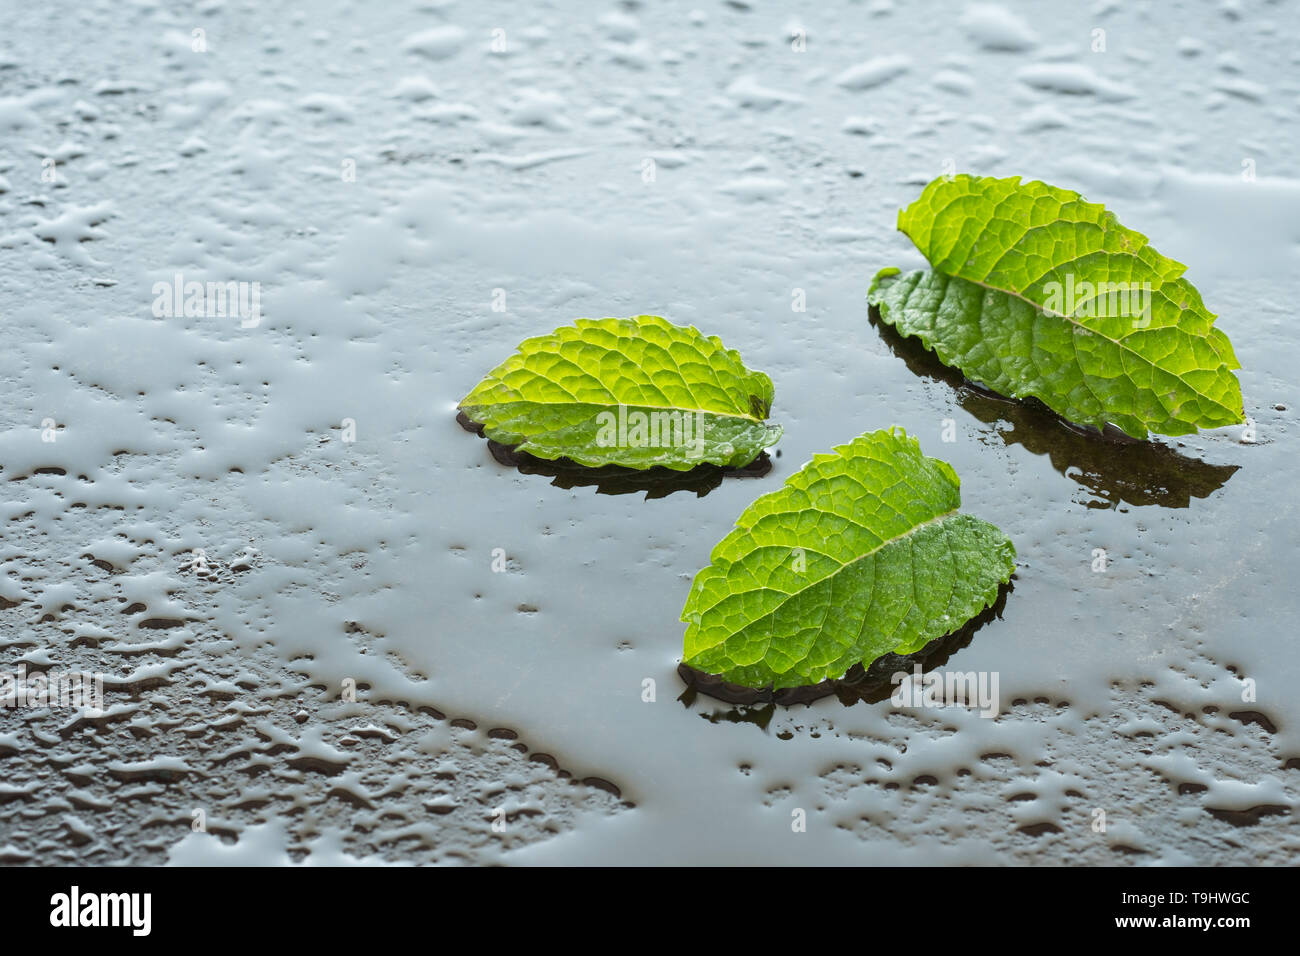 Feuille de menthe verte Mentha spicata Menthe (hugo) avec de l'eau à l'arrière allumé Banque D'Images